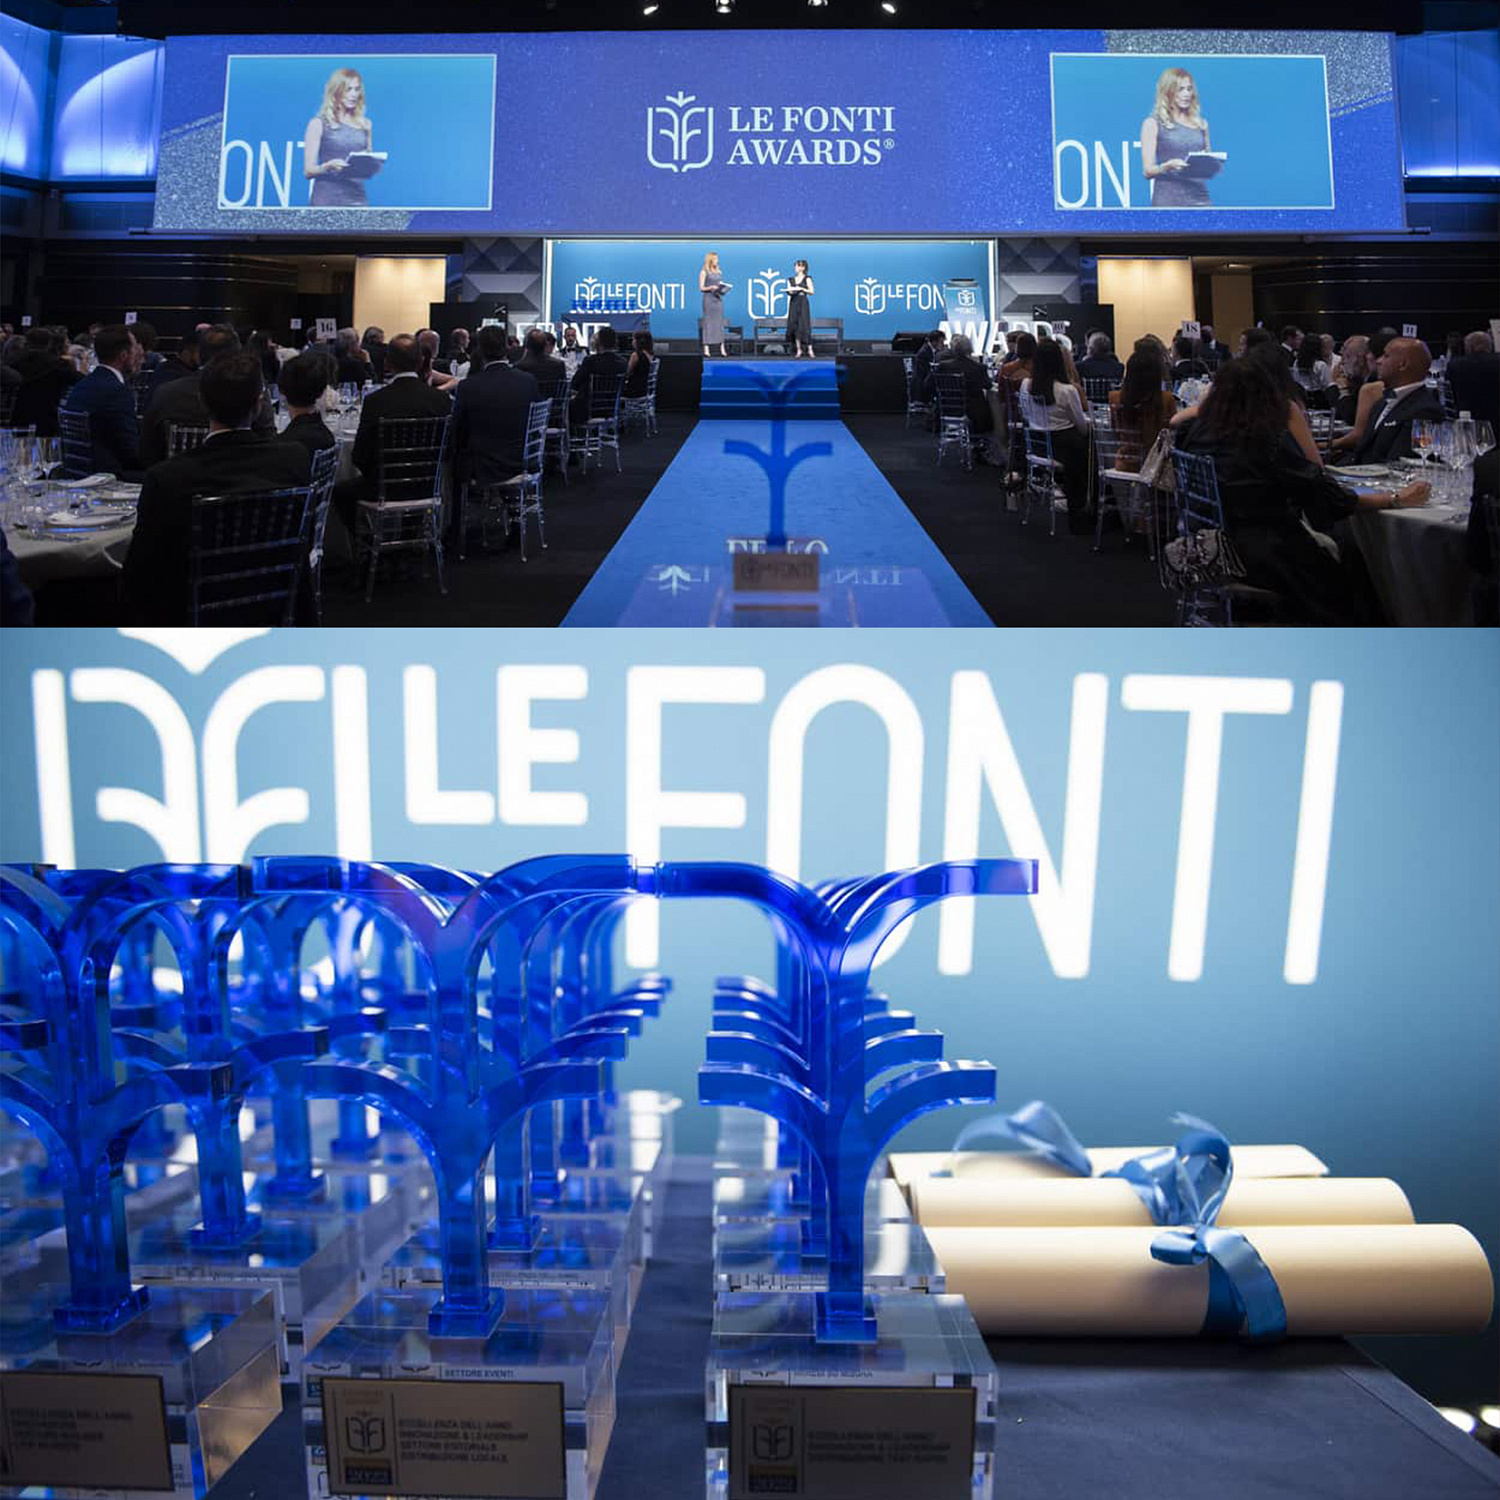 Броня Италия награждена престижной международной премией Le Fonti Awards 